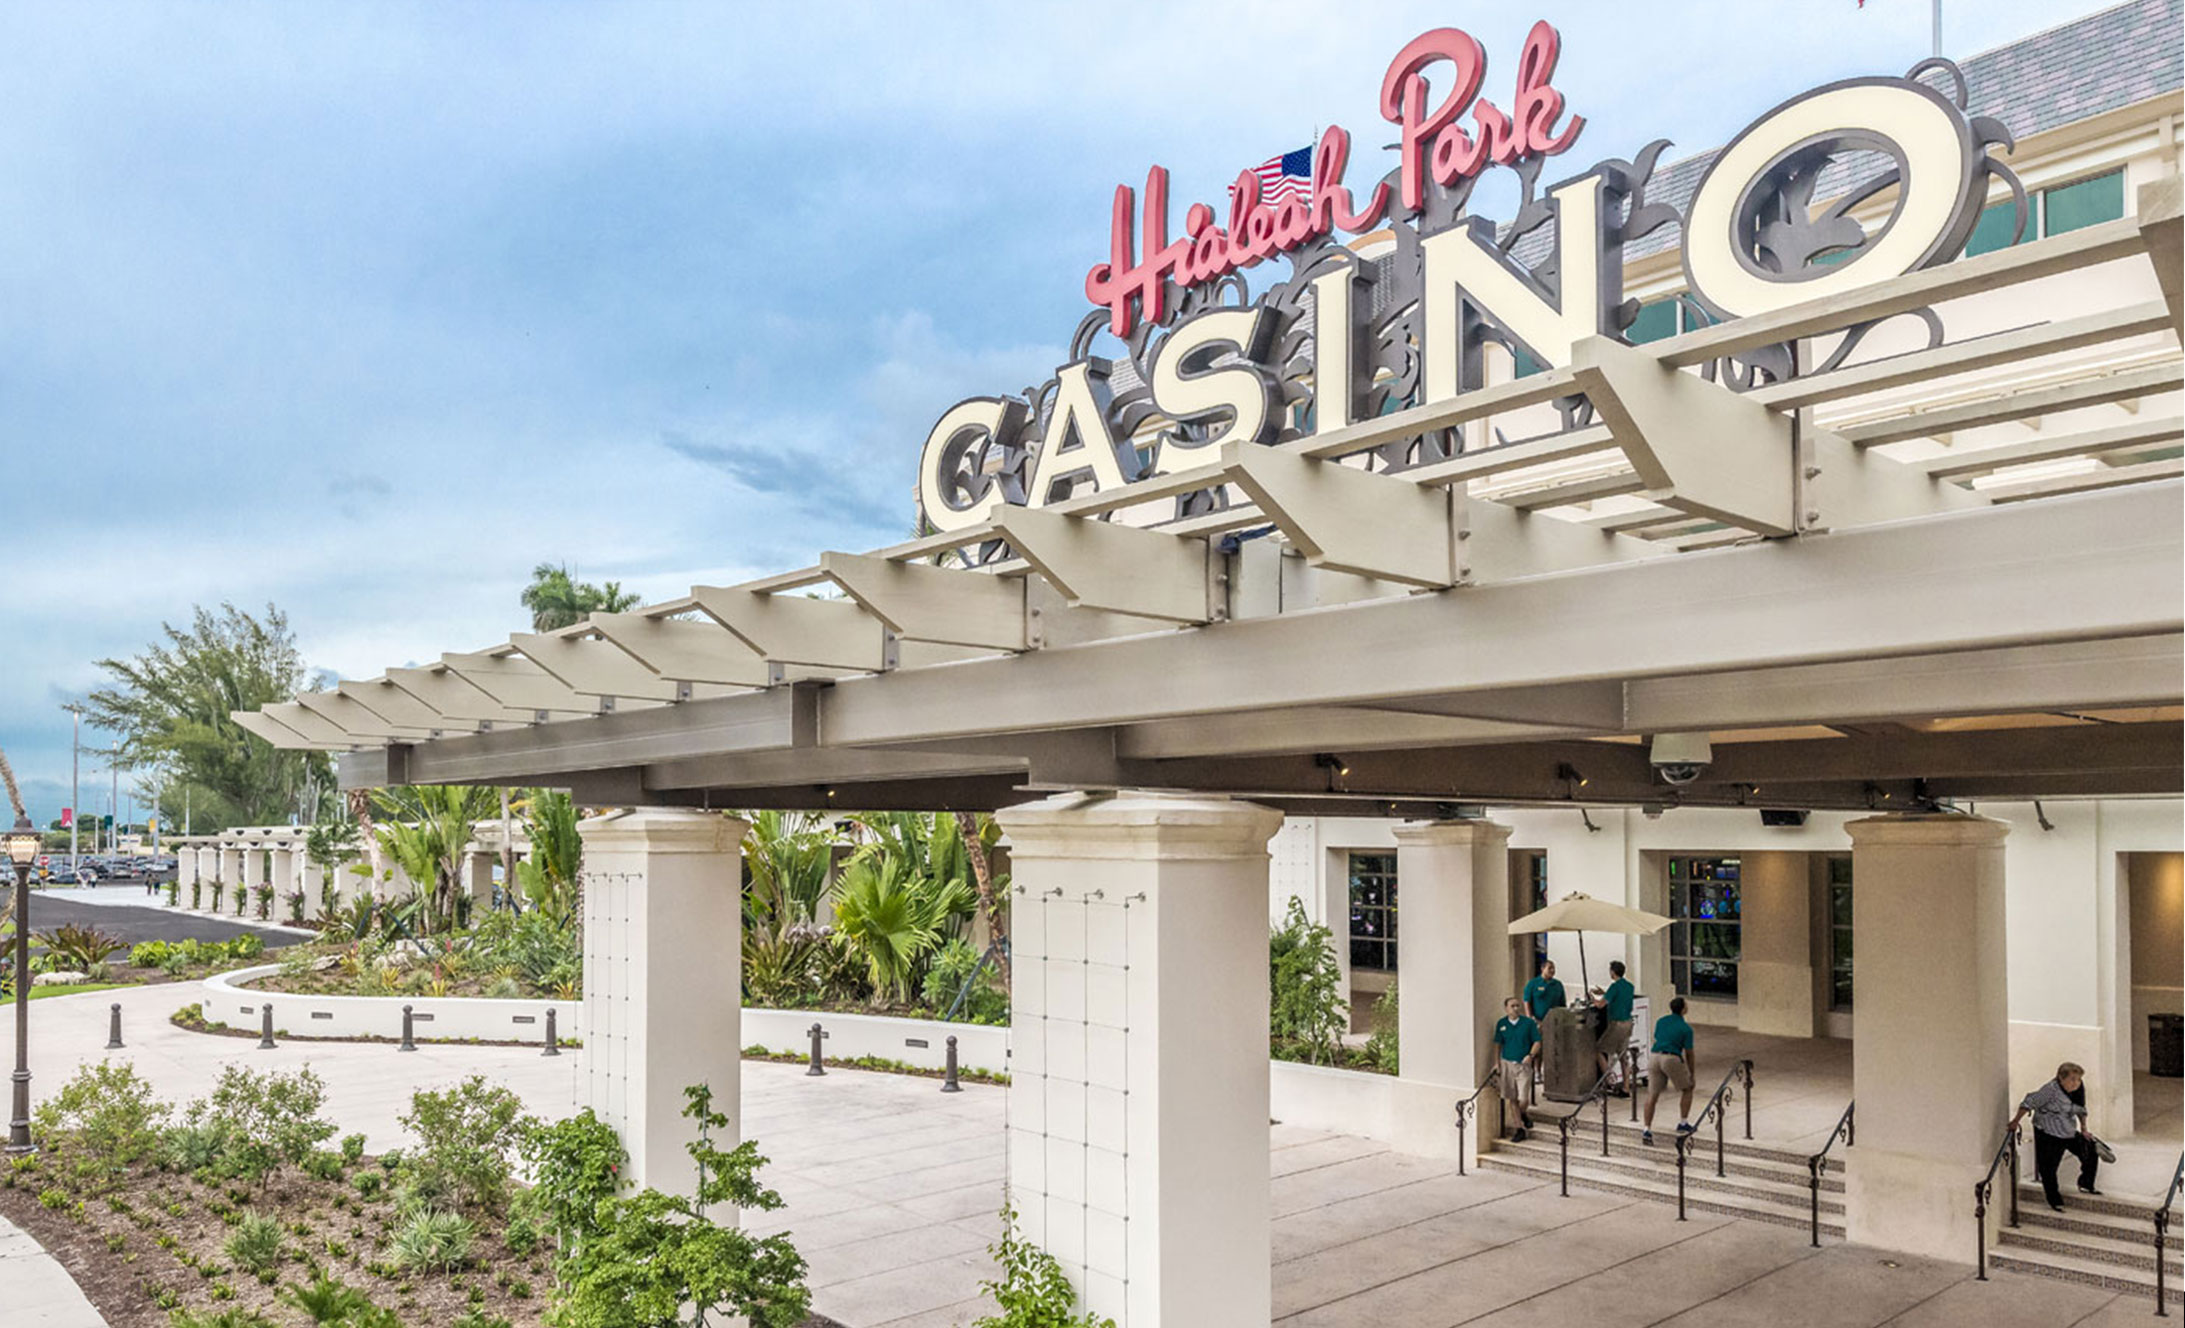 Hialeah Park Casino front entrance